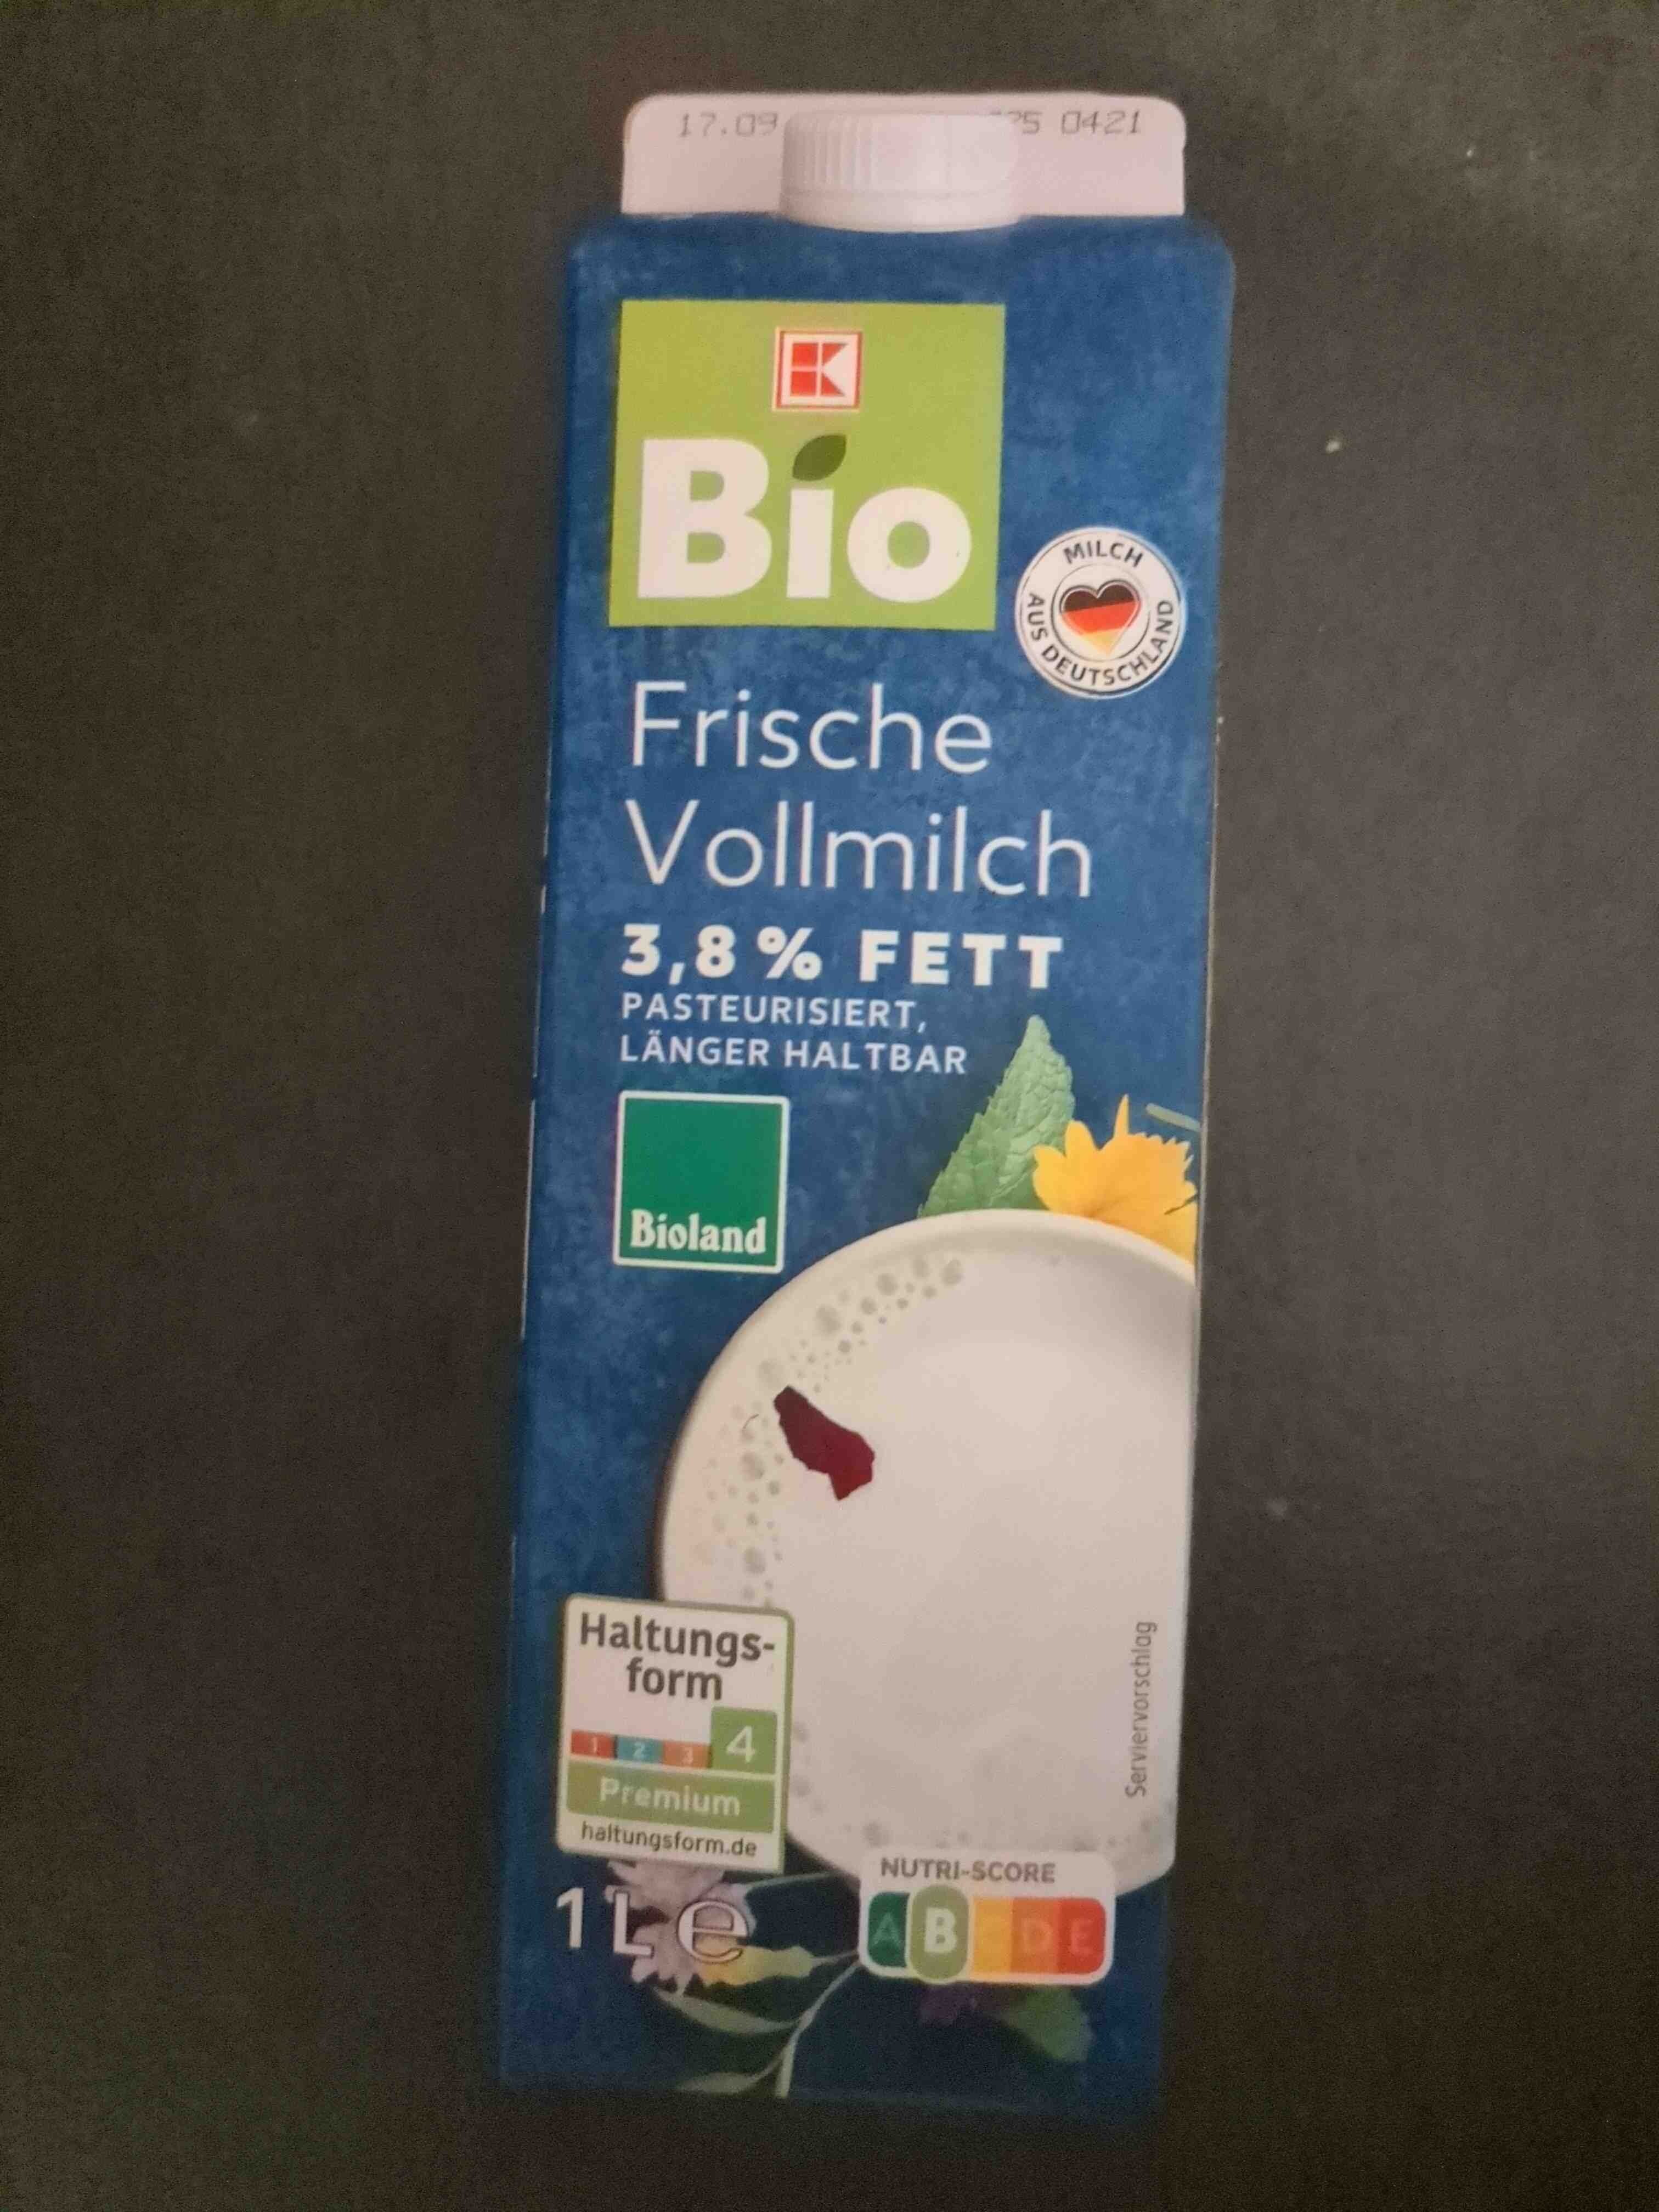 Bio Frische Vollmilch - Produkt - en